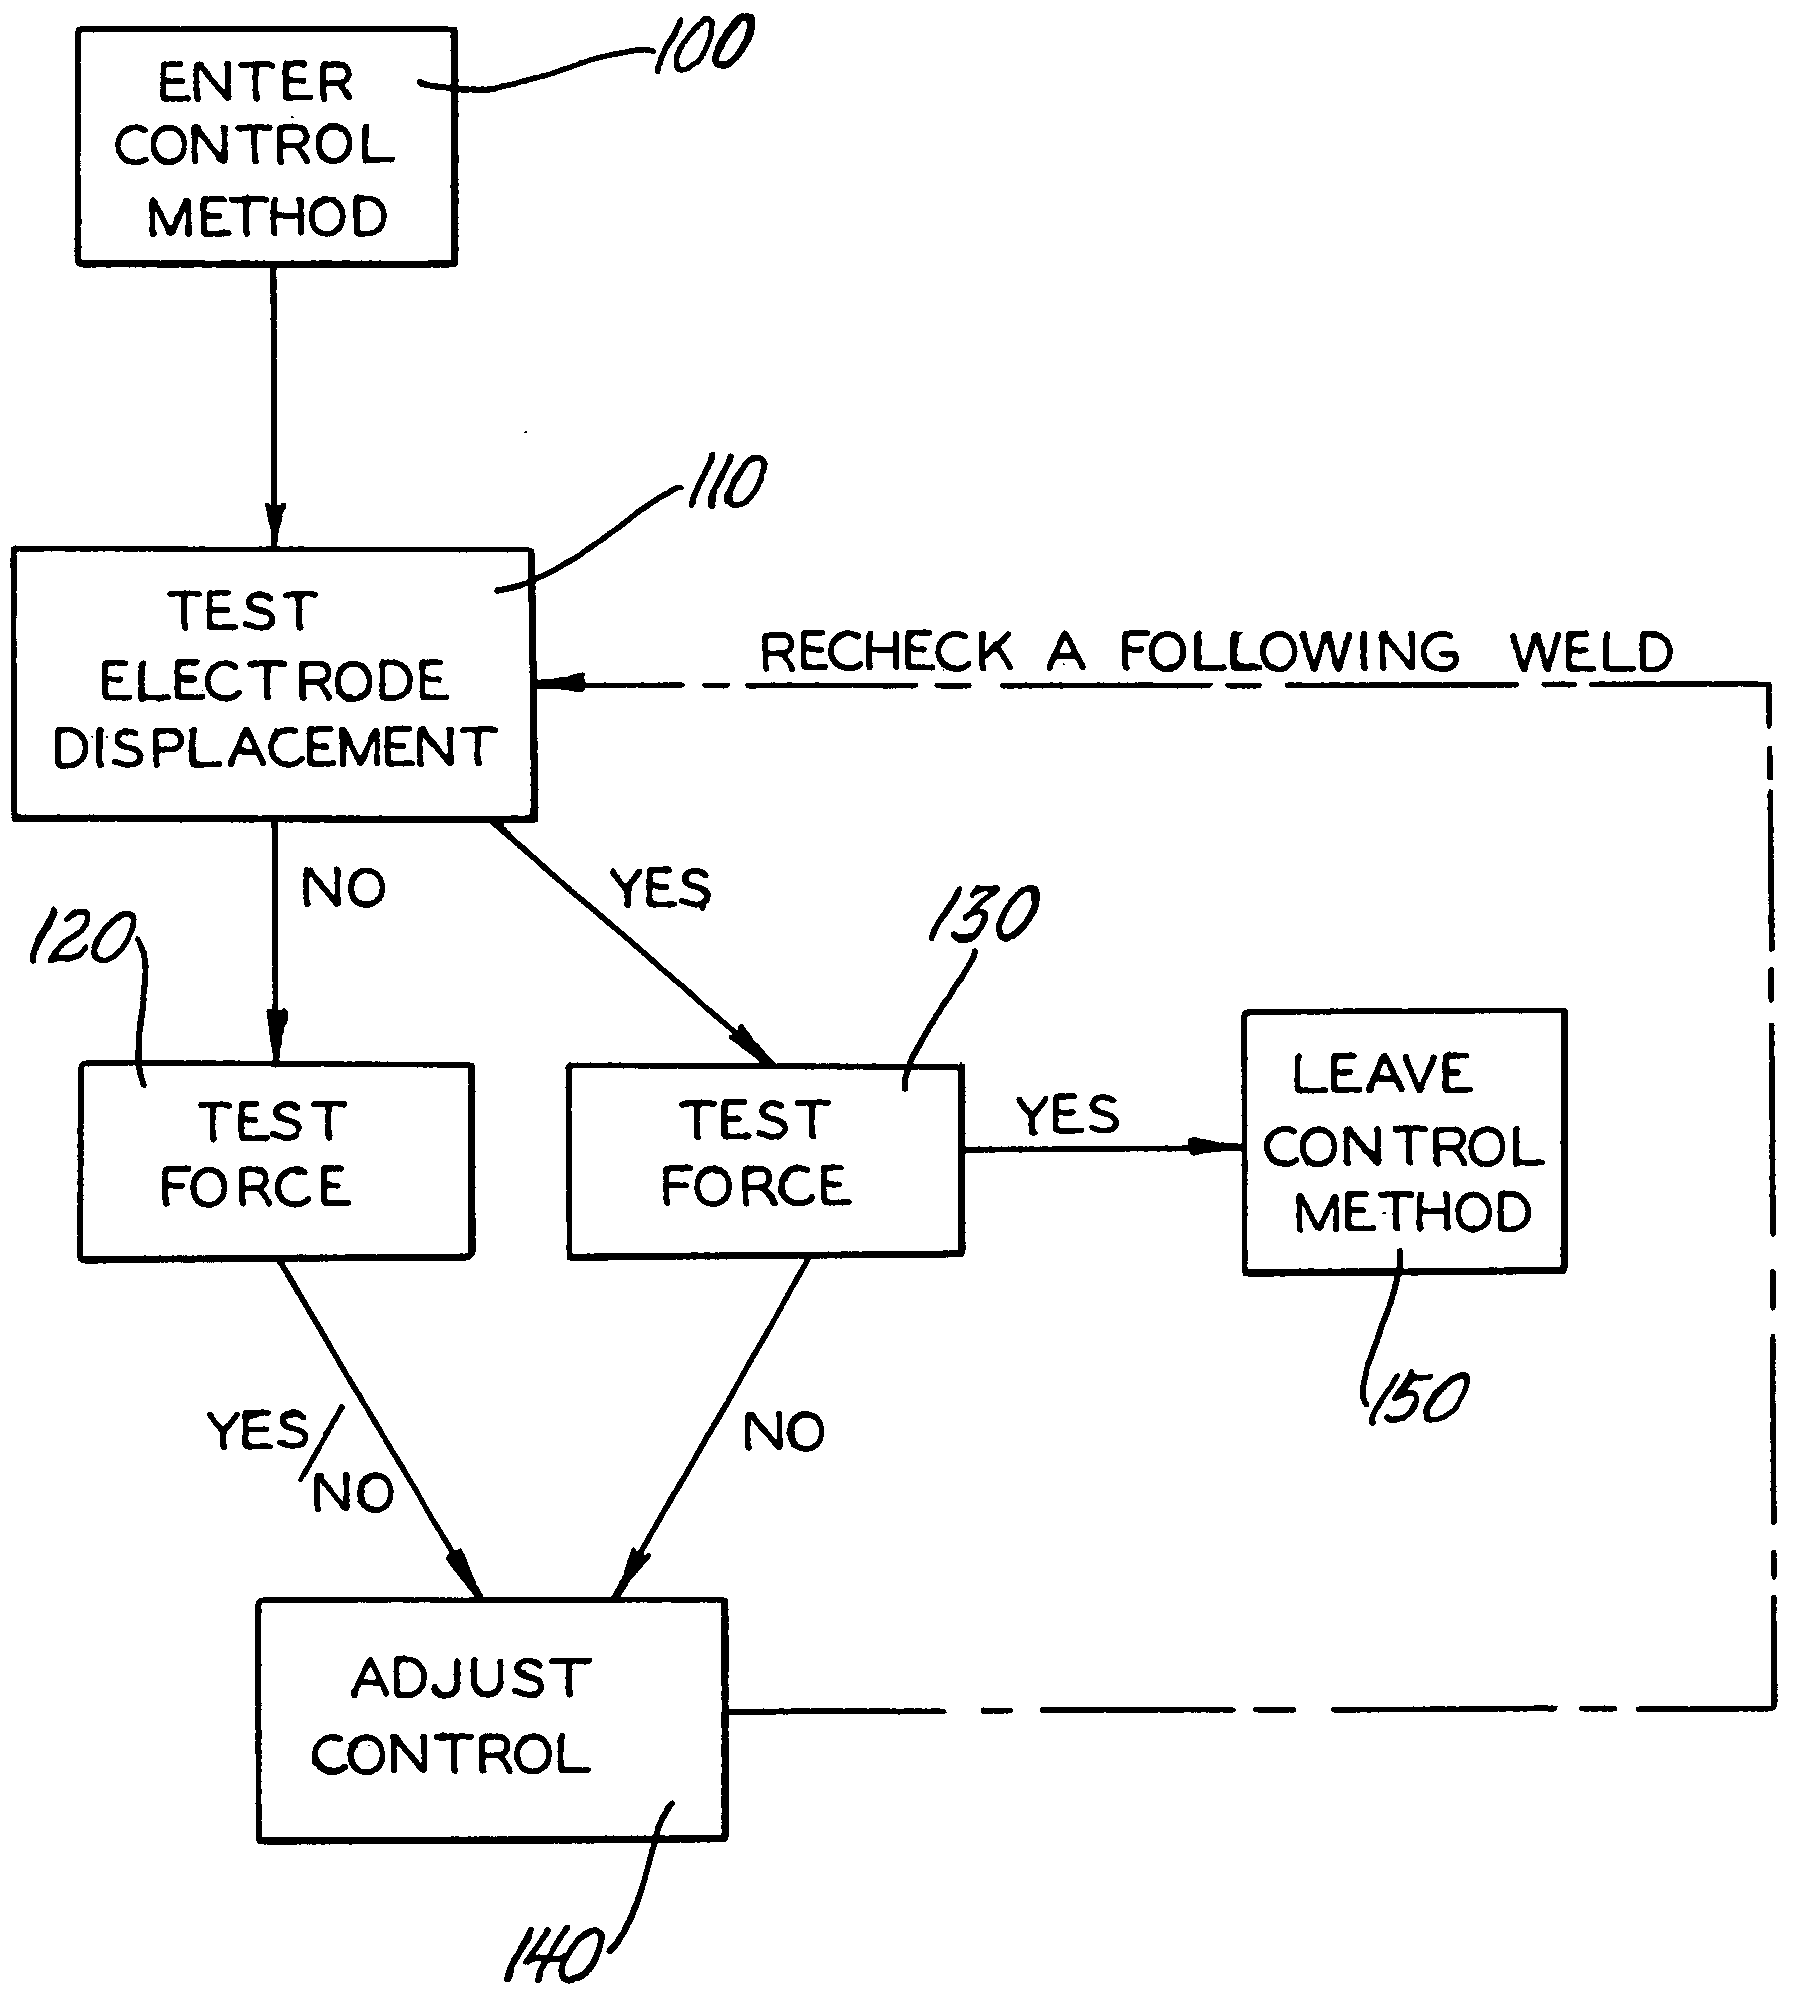 Resistance welding control method